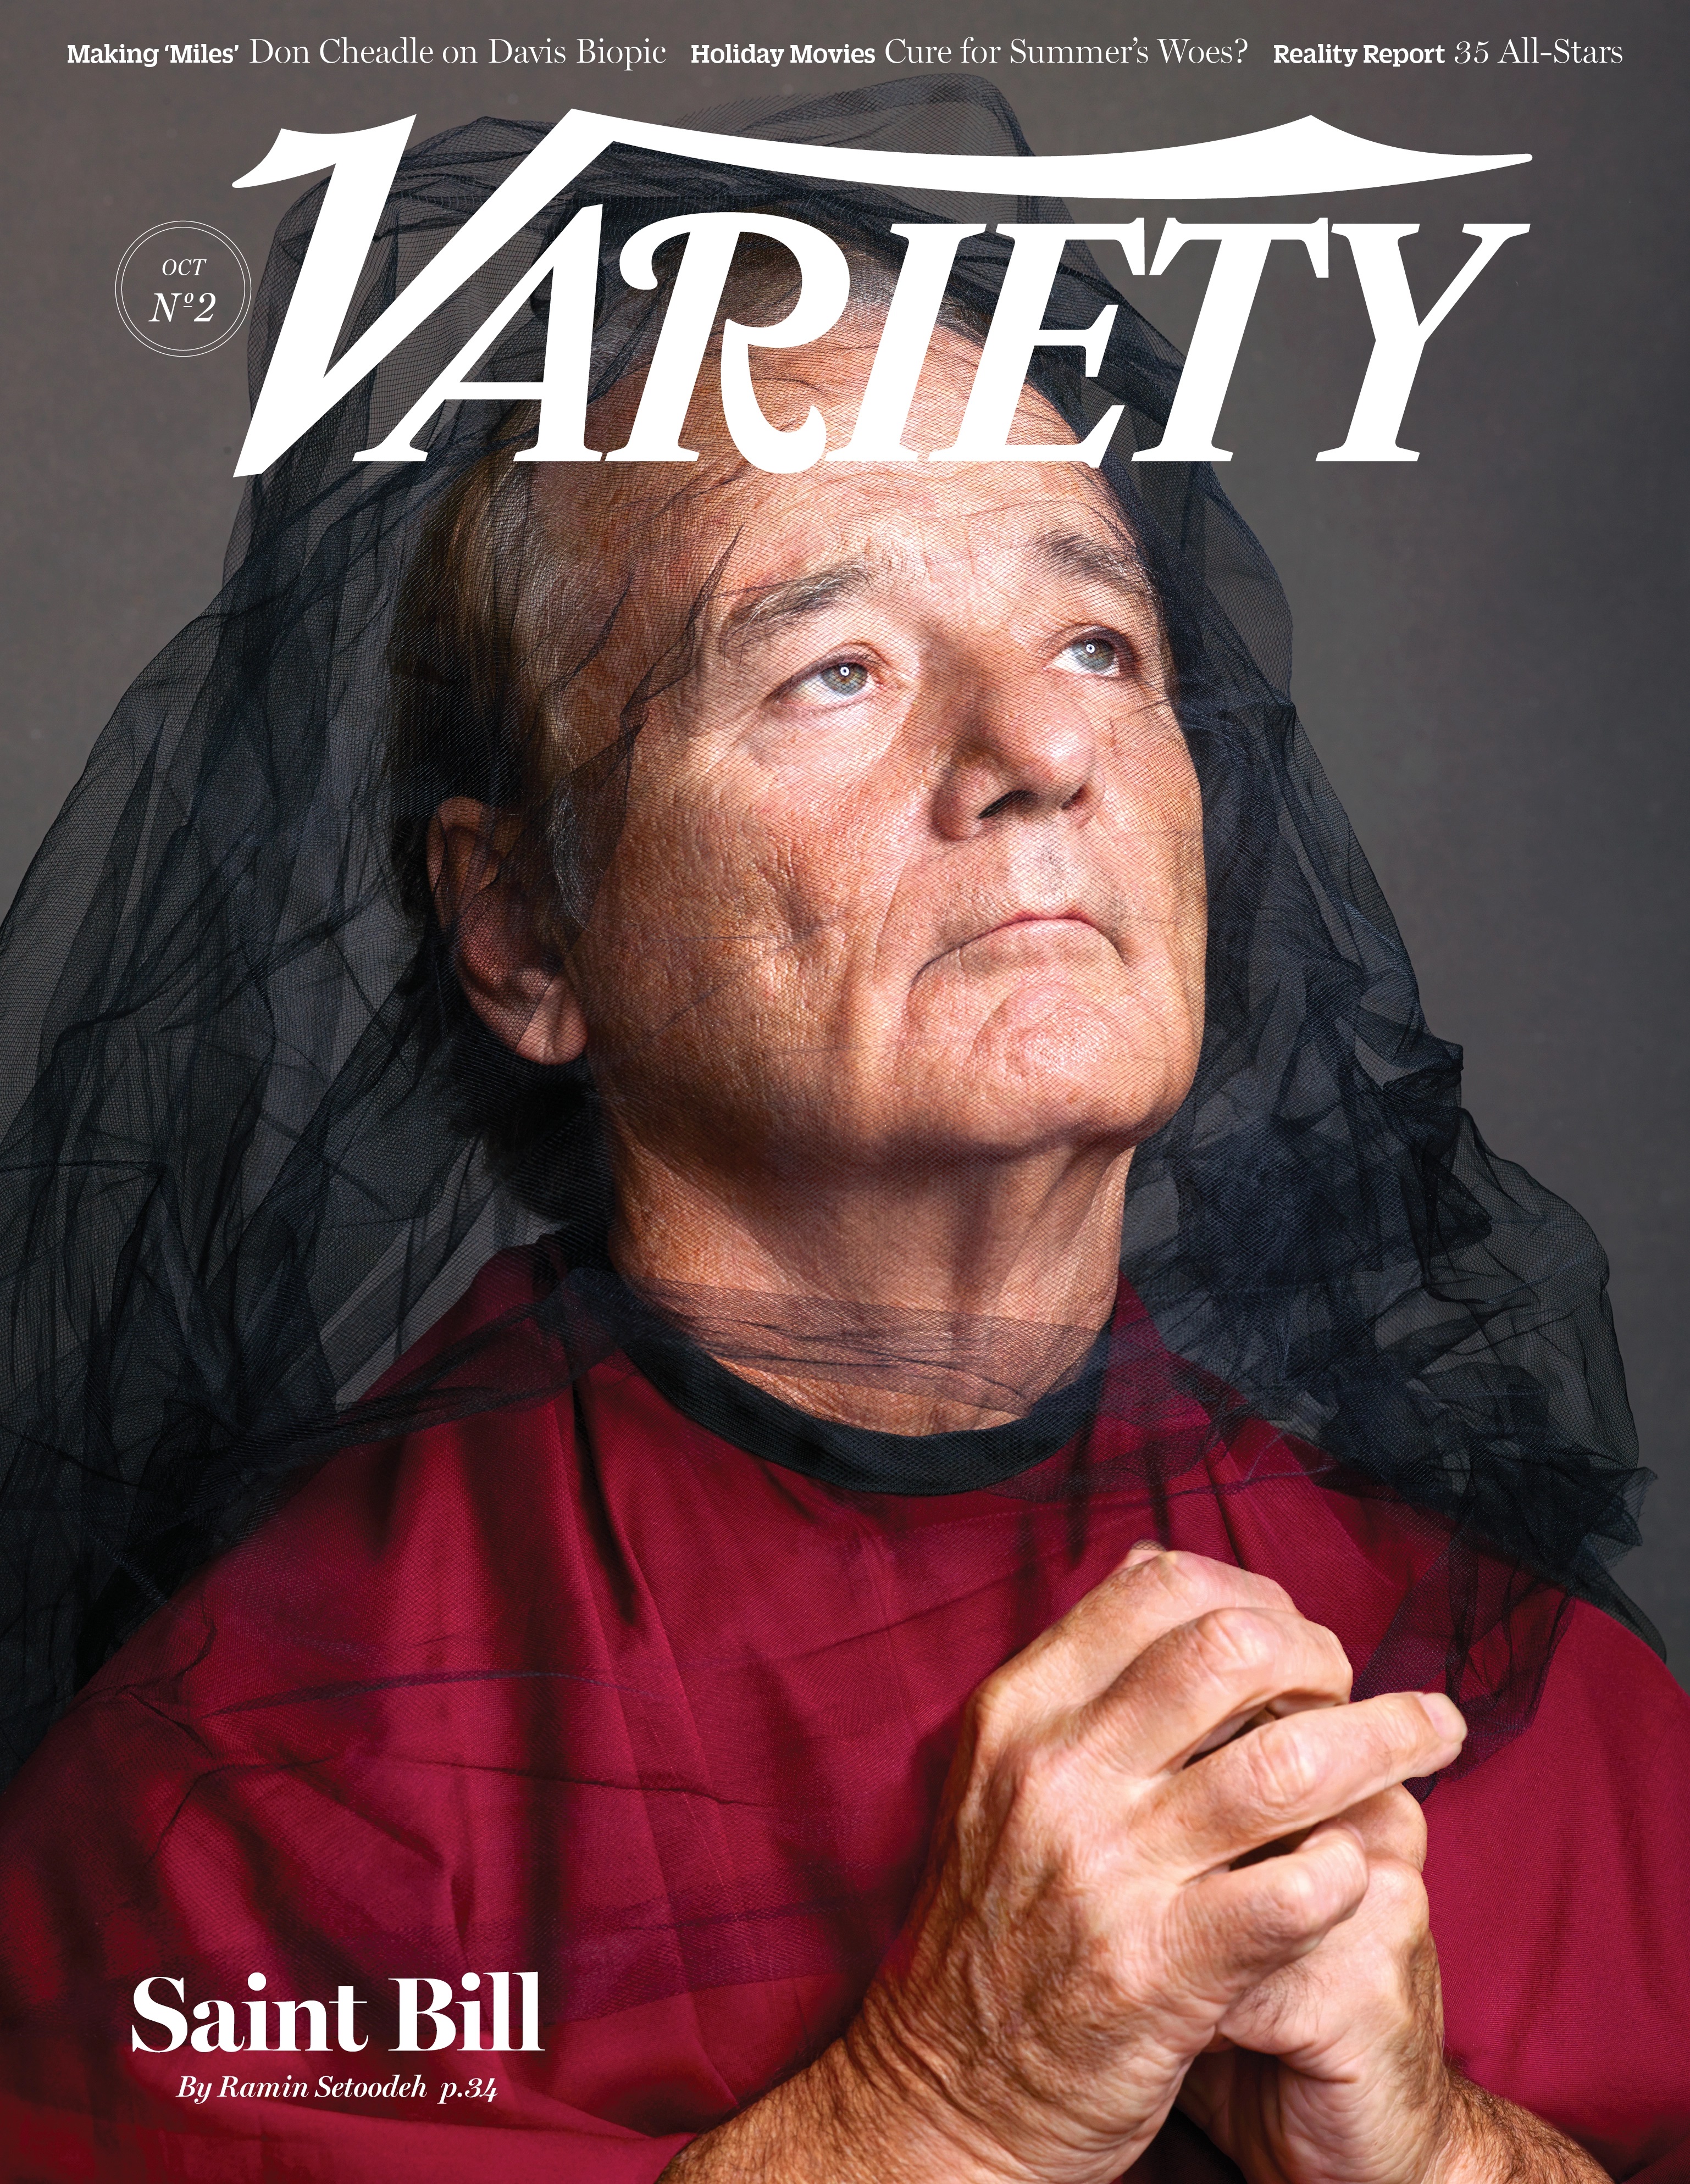 Variety-October 14, 2014, "Bill Murray"